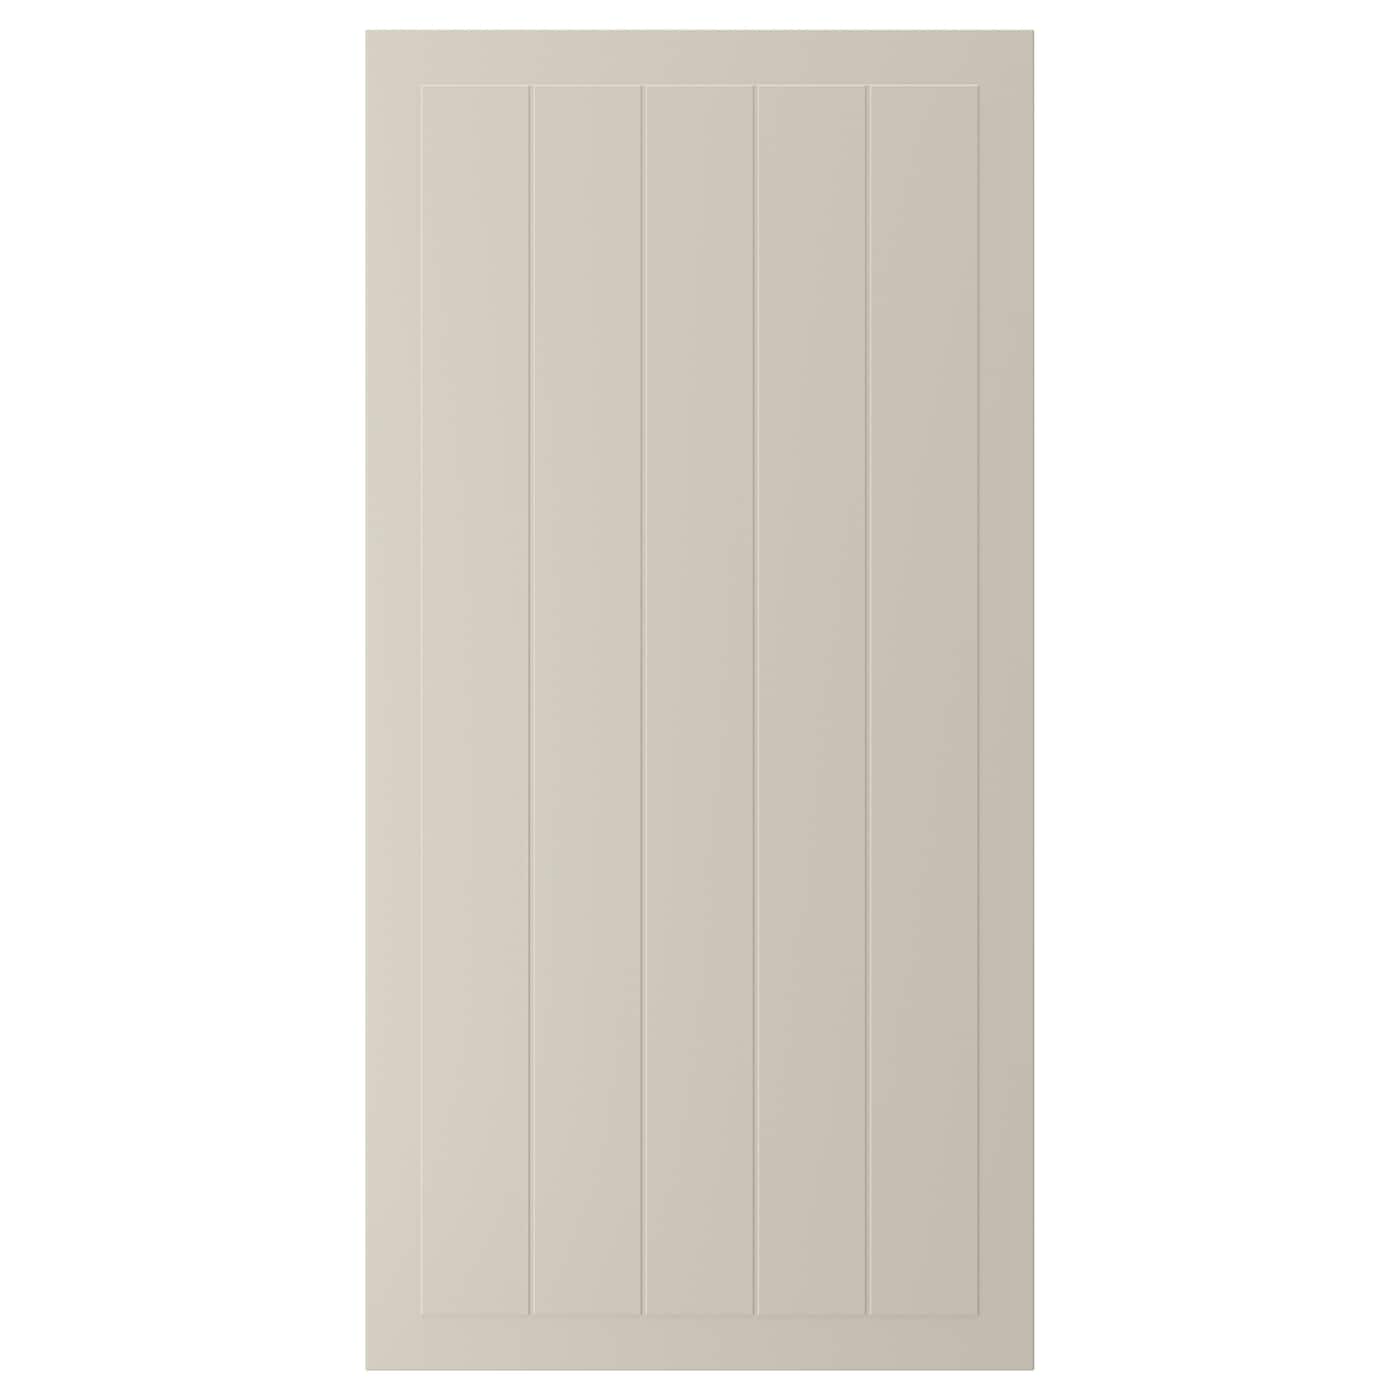 Дверца - IKEA STENSUND, 120х60 см, бежевый, СТЕНСУНД ИКЕА